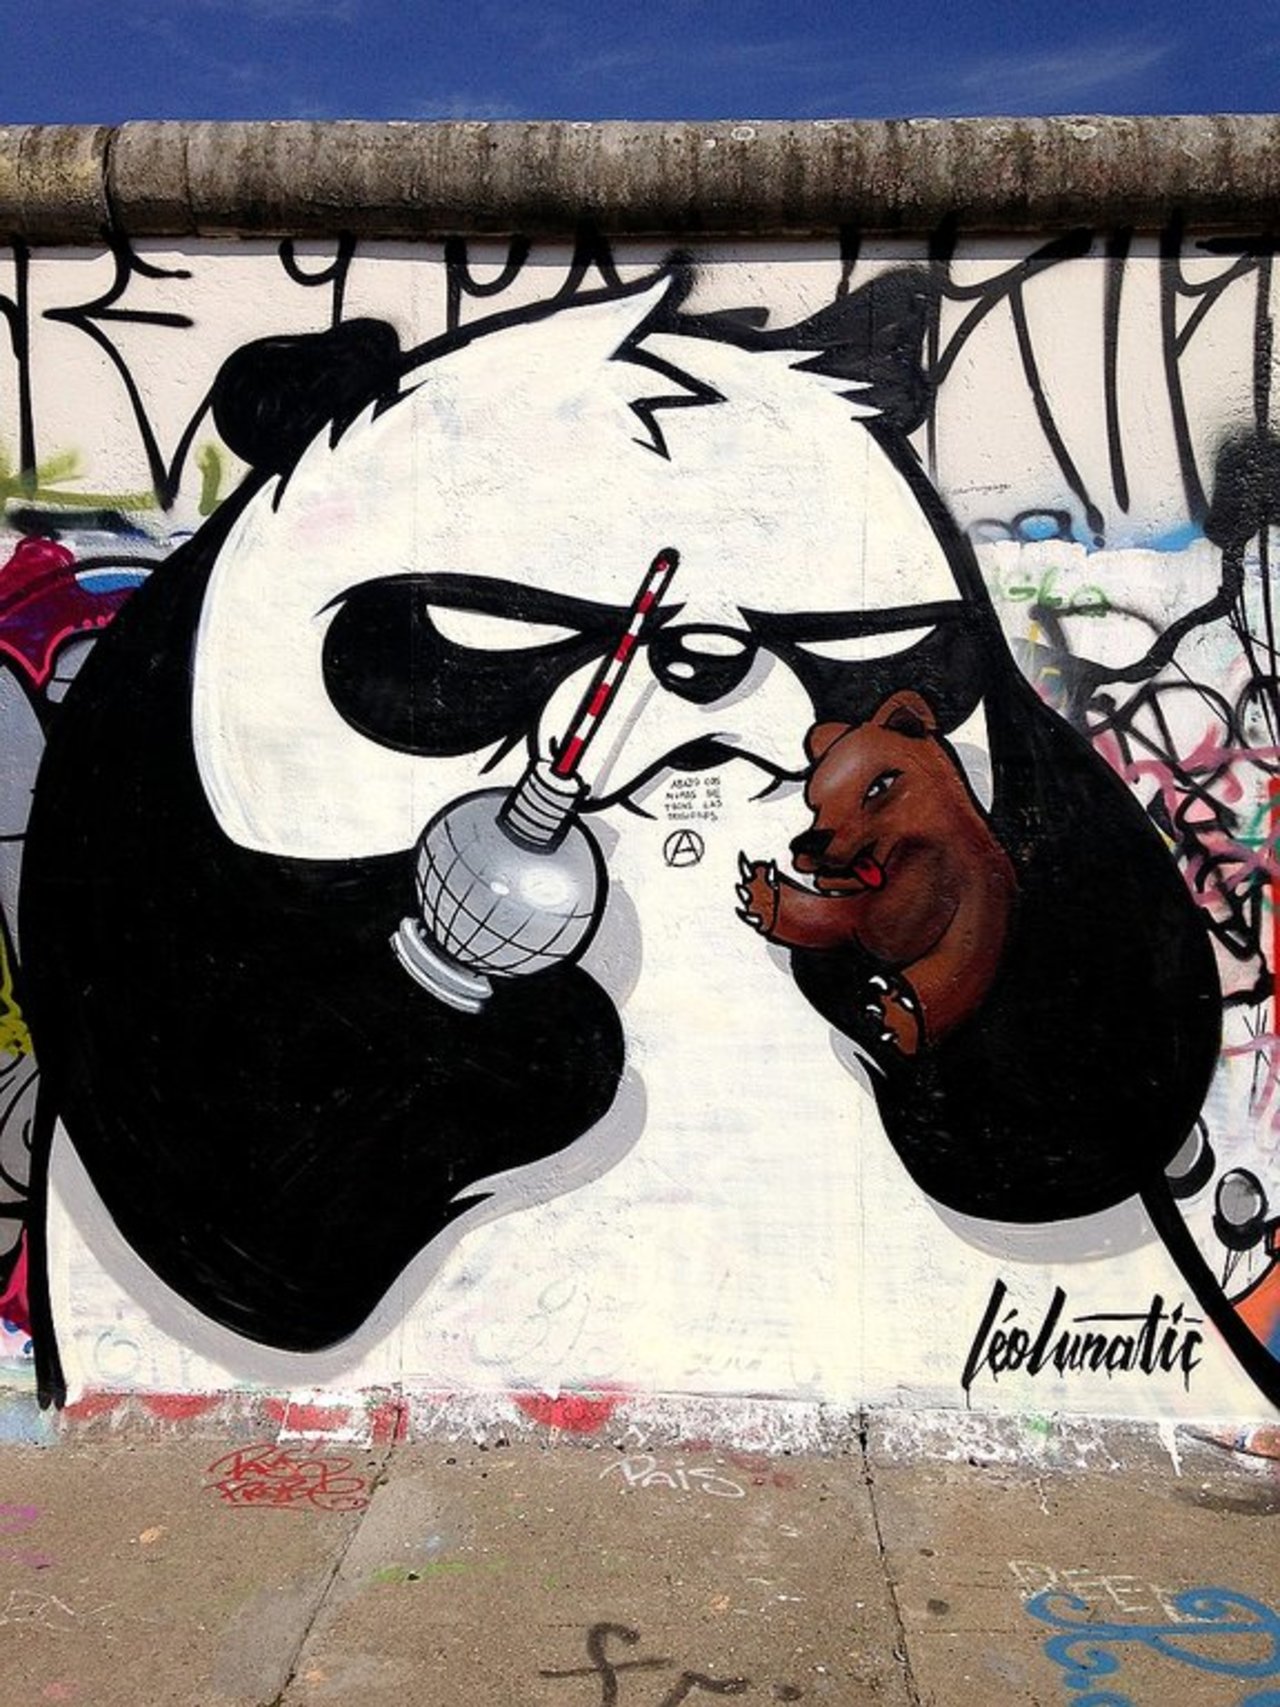 Street Art by LeoLunatic in #Berlin http://www.urbacolors.com #art #mural #graffiti #streetart https://t.co/7TnCWIpCTK